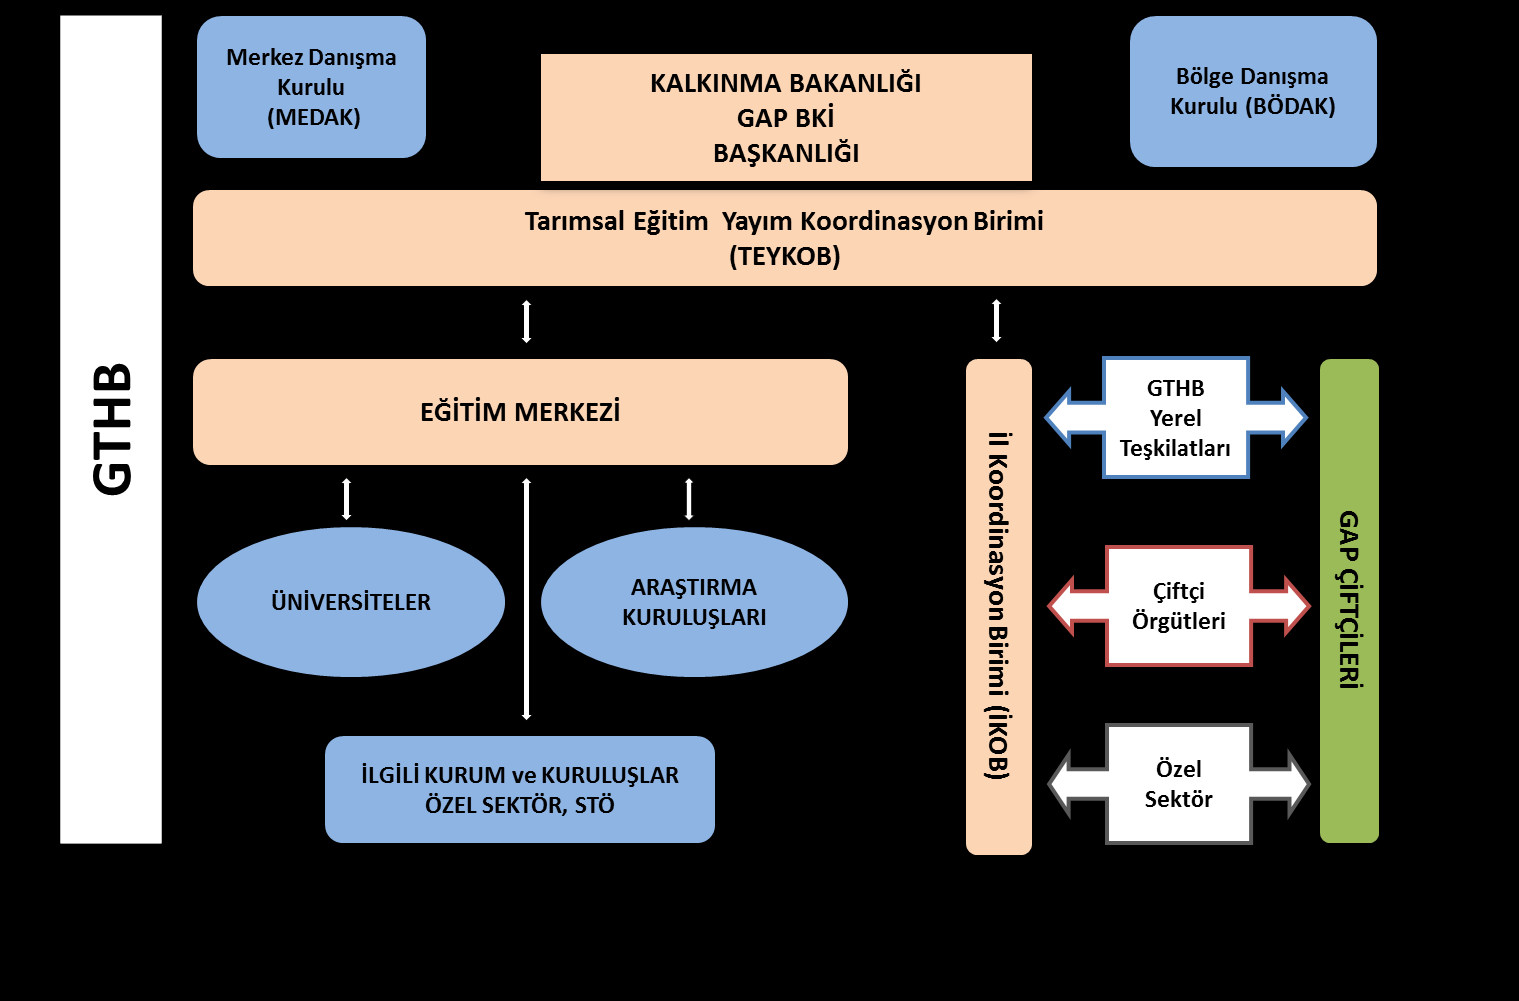 1.1. Modelin Yönetimi Modelin yönetimi ve organizasyonu, organizasyon şemasında da görüldüğü gibi GAP BKİB da oluşturulacak GAP Tarımsal Eğitim ve Yayım Koordinasyon Birimi (TEYKOB) tarafından GTHB